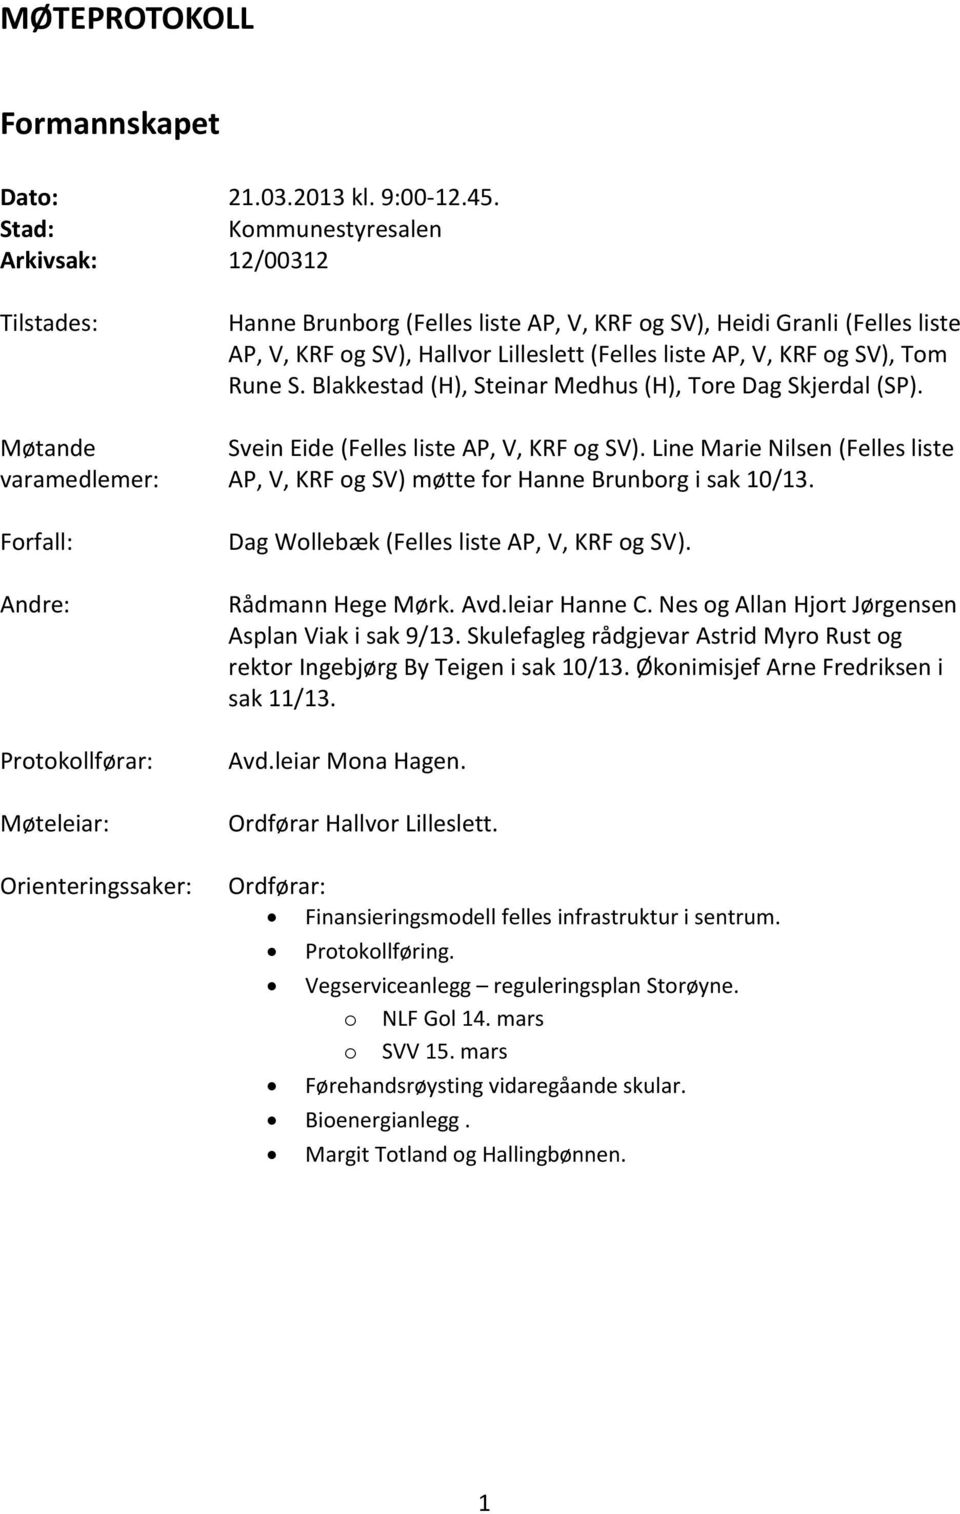 (Felles liste AP, V, KRF og SV), Hallvor Lilleslett (Felles liste AP, V, KRF og SV), Tom Rune S. Blakkestad (H), Steinar Medhus (H), Tore Dag Skjerdal (SP). Svein Eide (Felles liste AP, V, KRF og SV).